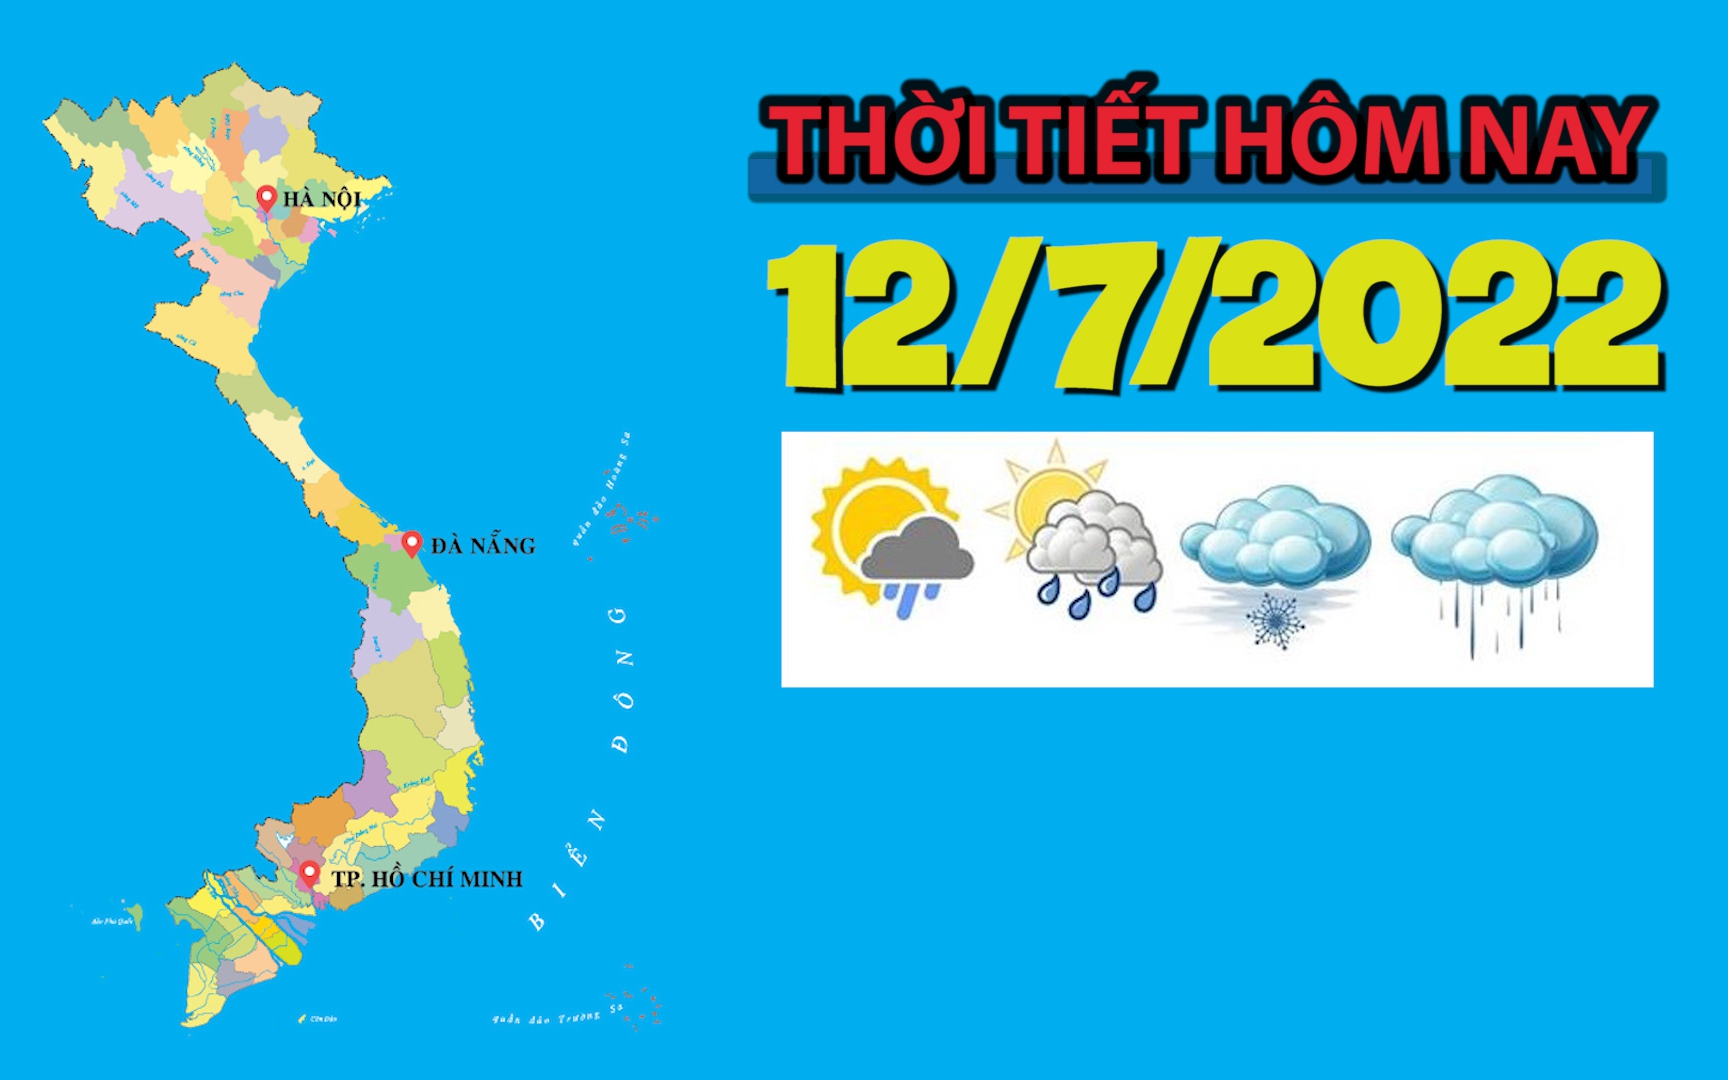 Thời tiết hôm nay 12/7/2022: Bắc Bộ, Trung Bộ mưa to cục bộ; Tây Nguyên, Nam Bộ có nơi mưa rất to